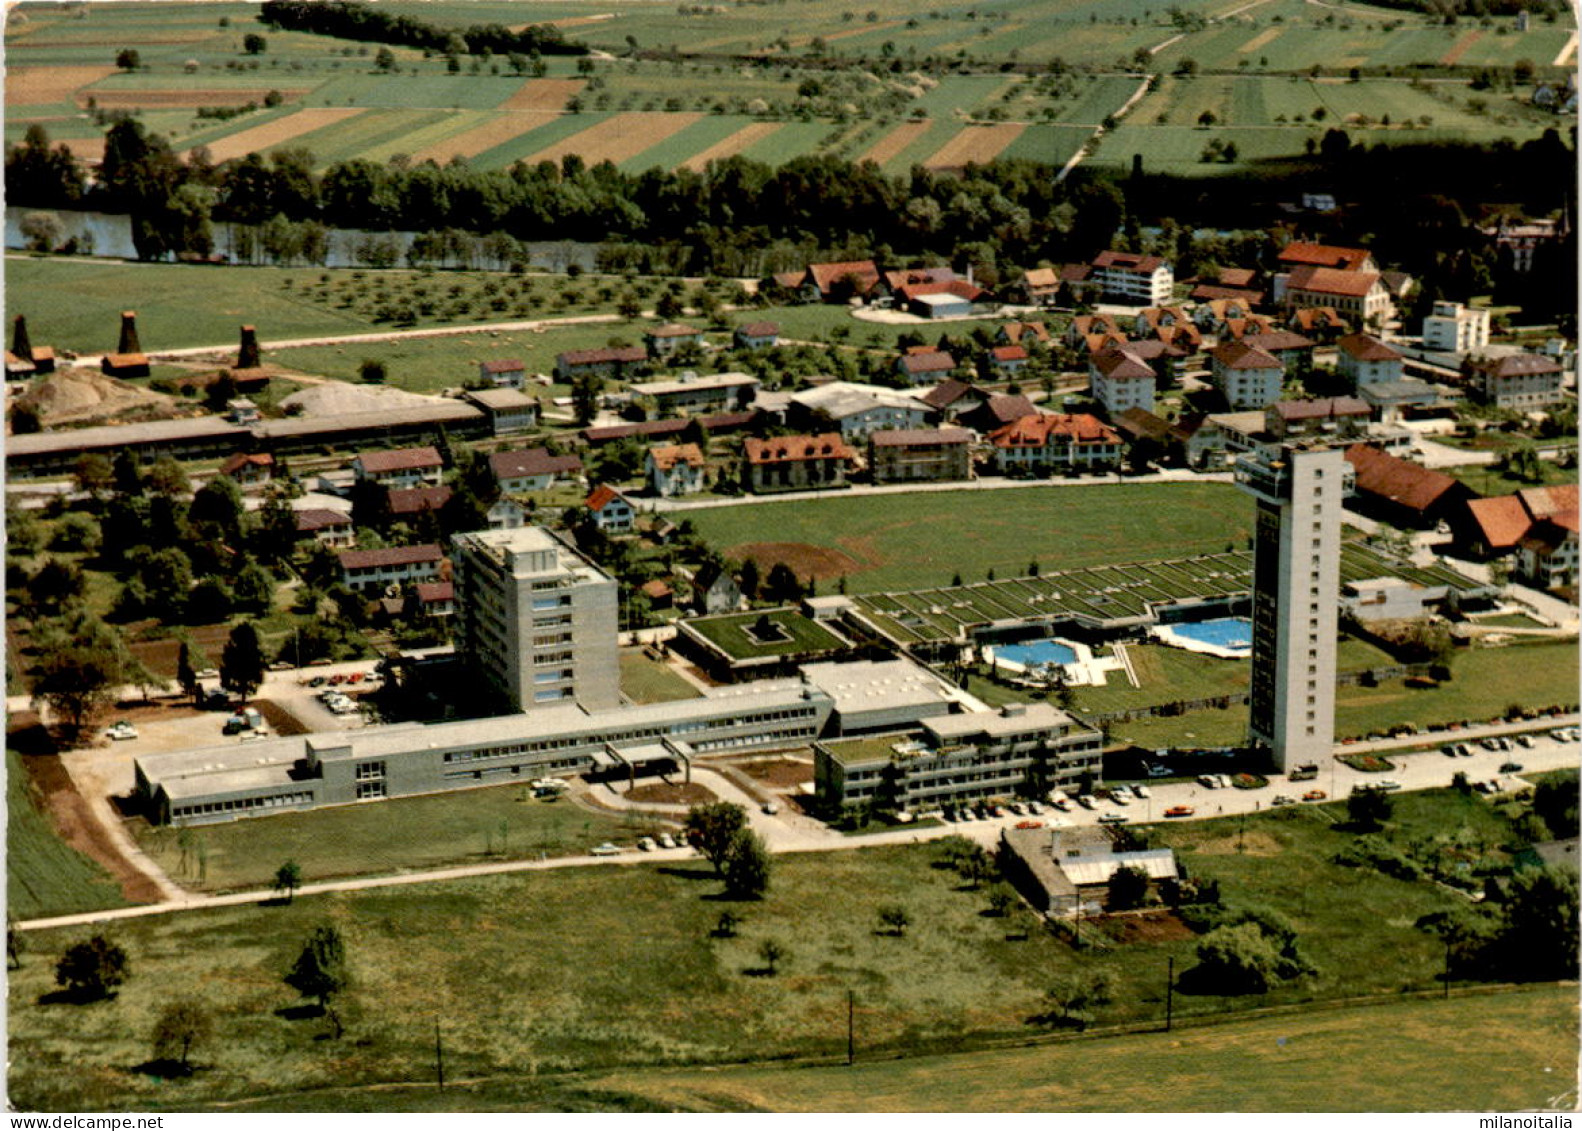 Thermalkurort Zurzach - Rheumaklinik Mit Thermalbad (19278) * 6. 2. 1974 - Zurzach